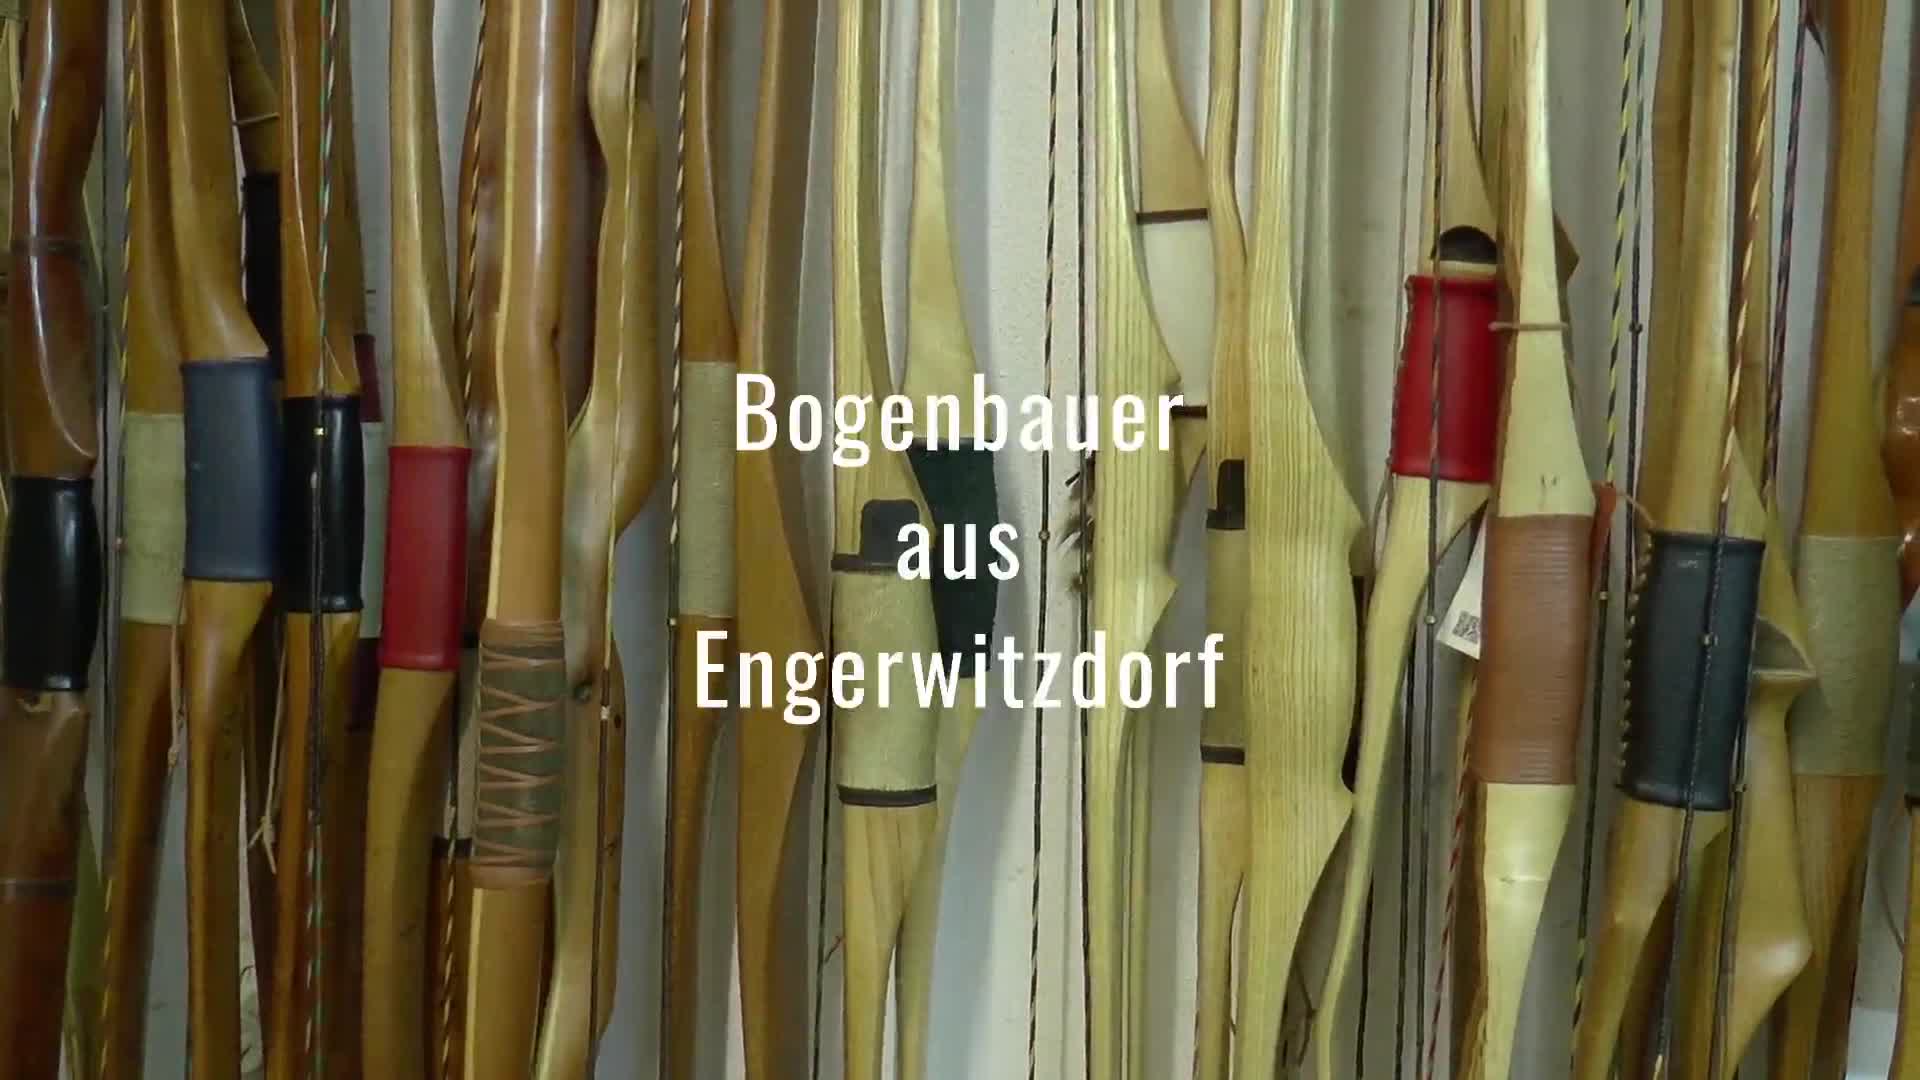 Bogenbauer aus Engerwitzdorf